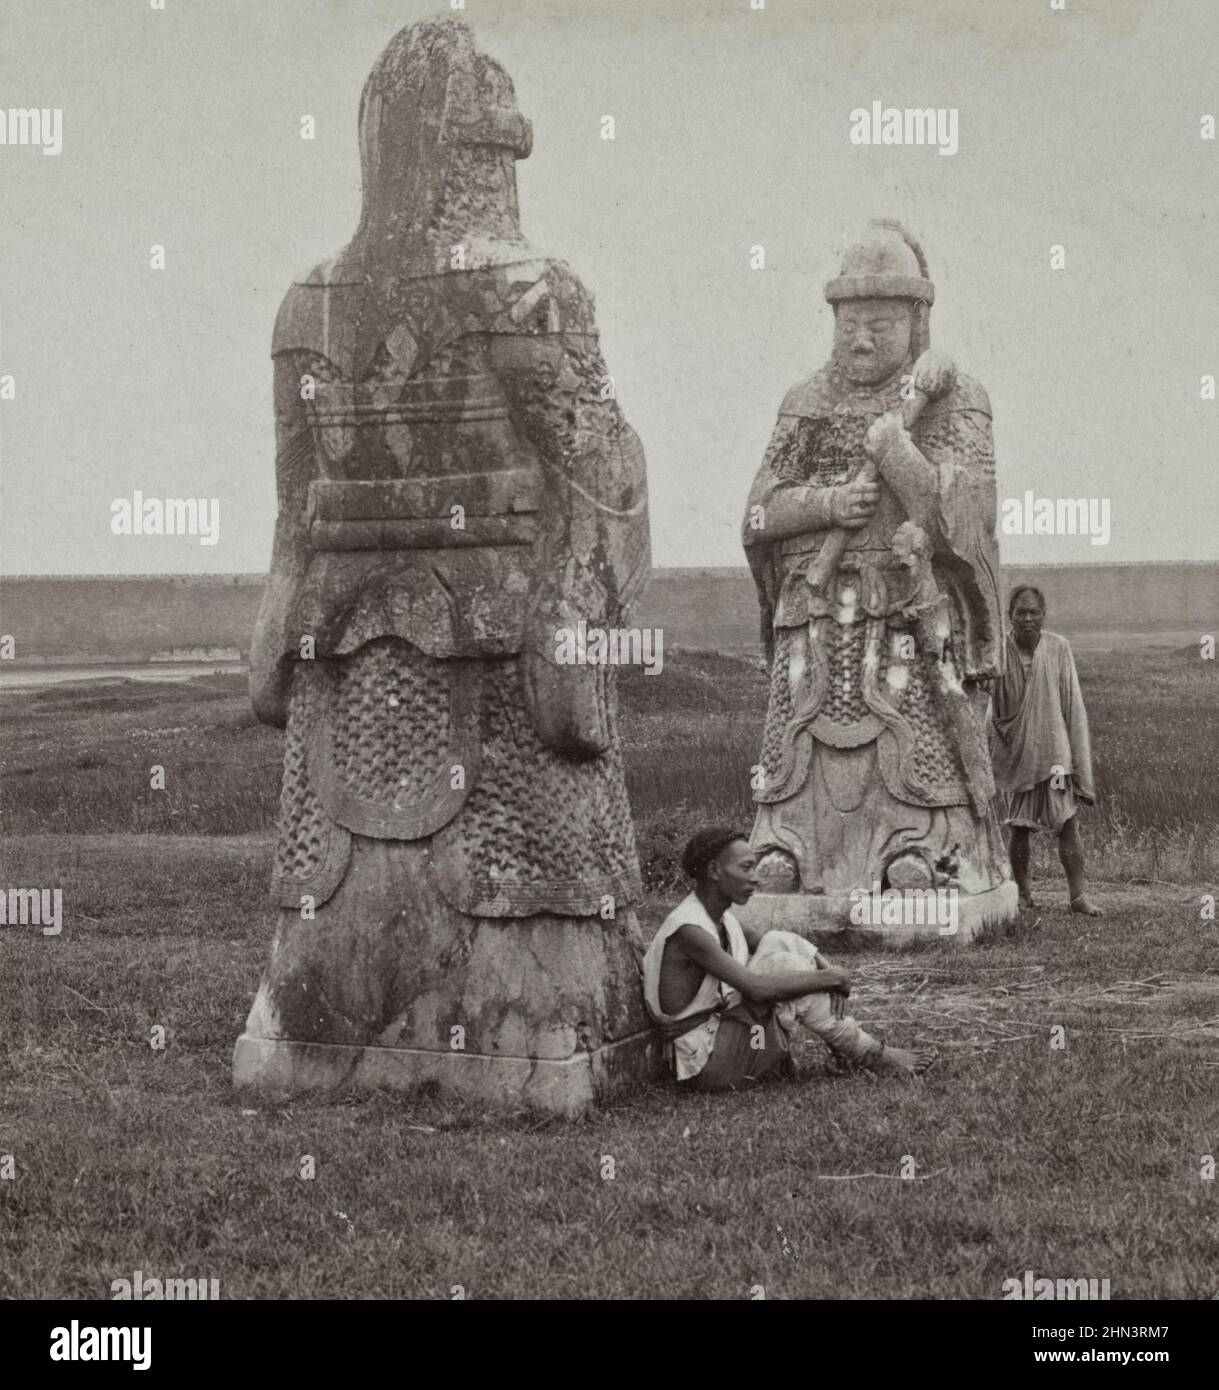 Photo d'époque des hommes chinois en robe traditionnelle et file d'attente près d'une énorme figure de pierre sur l'avenue menant aux tombes des Rois (tombes Ming). N/a Banque D'Images